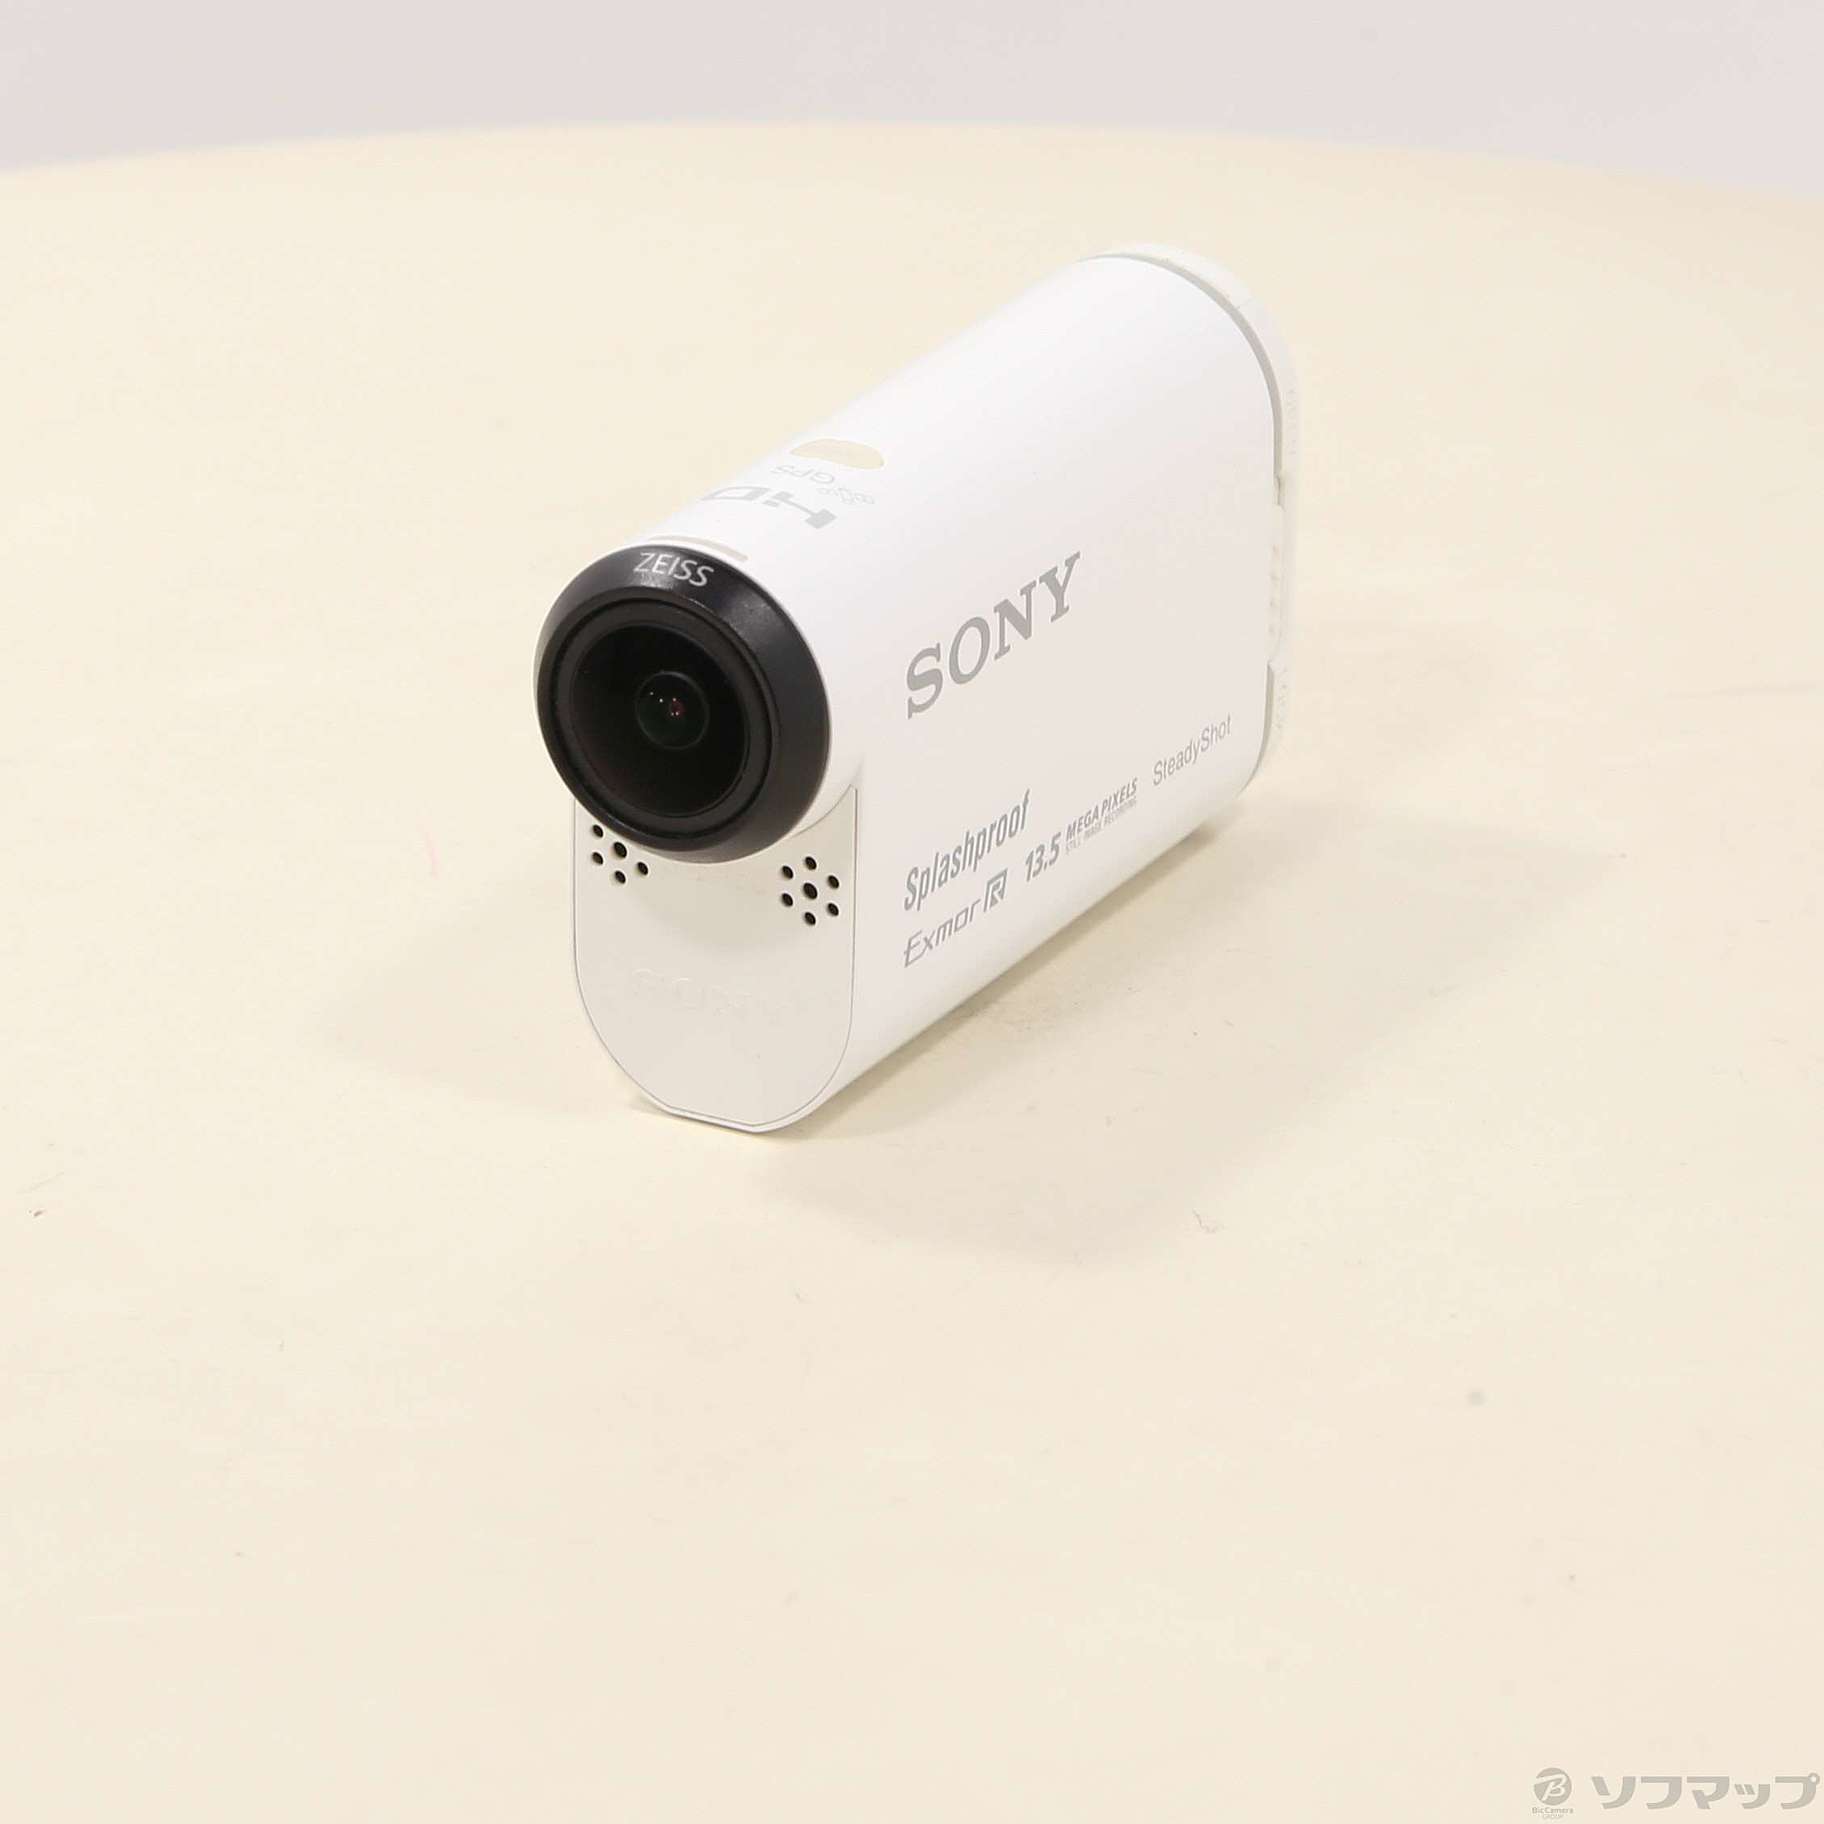 中古SONY HDR-AS100Vアクションカメラ